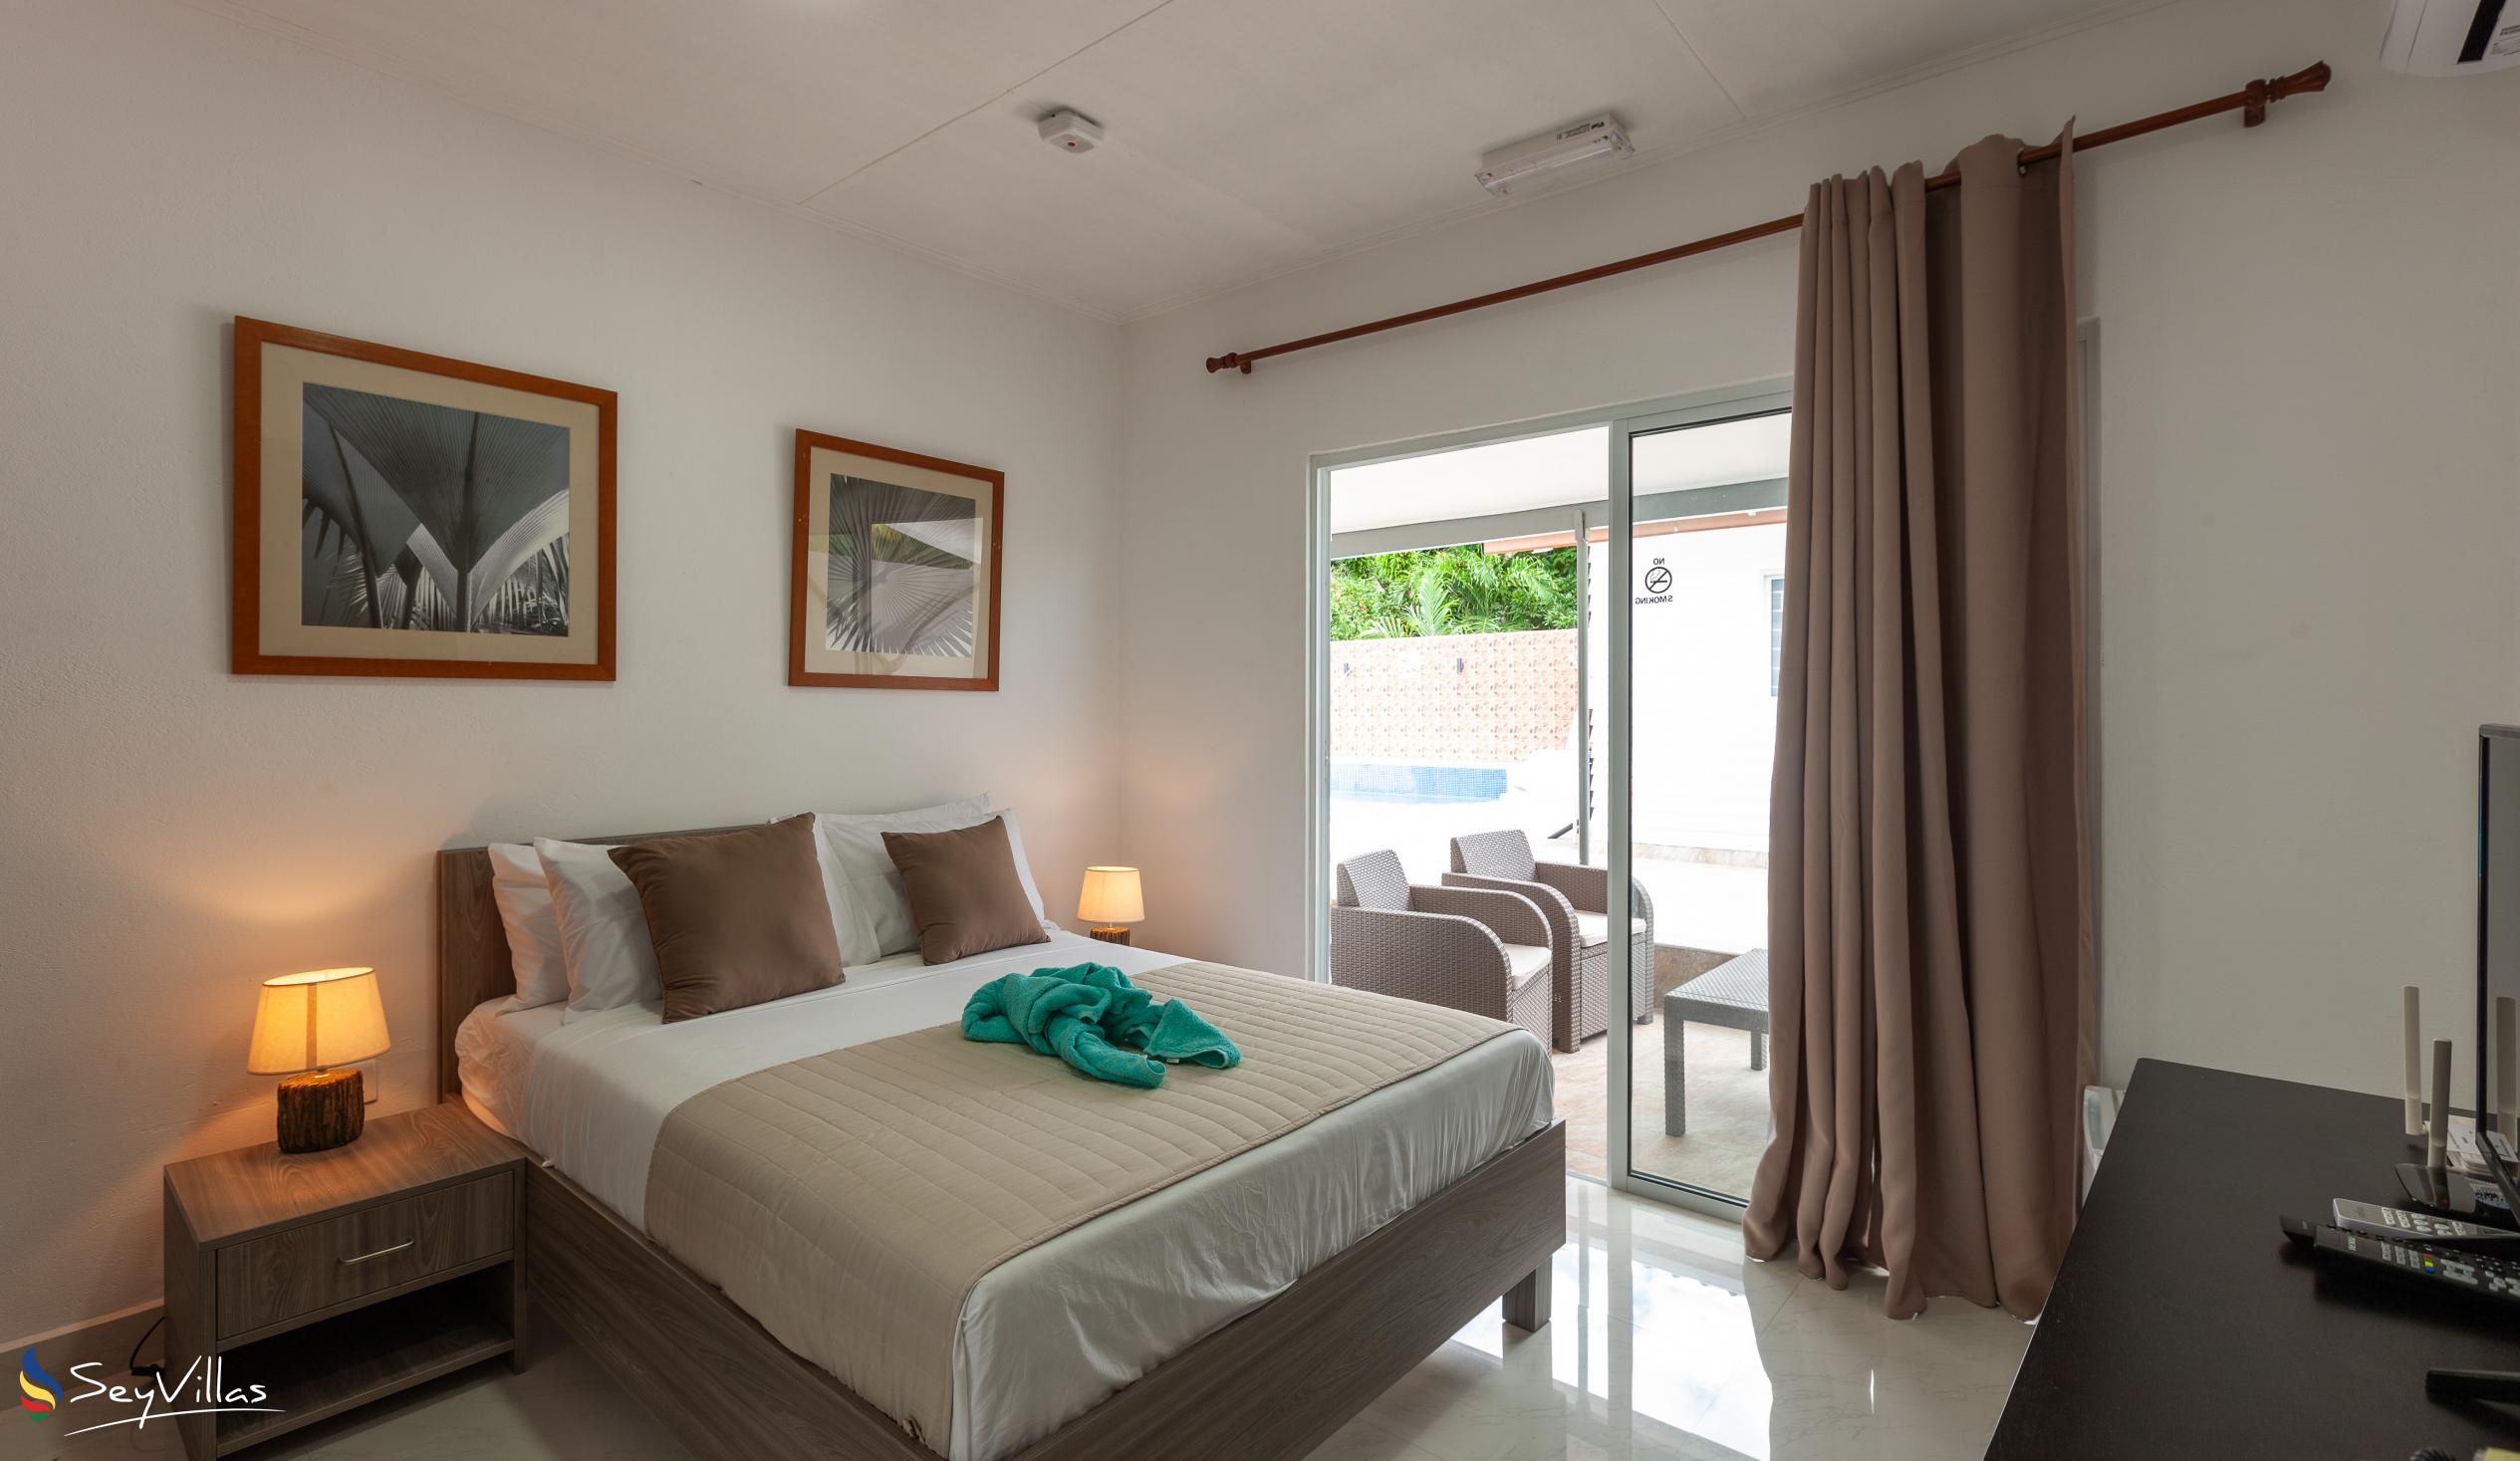 Foto 41: Hotel Plein Soleil - Familienzimmer - Praslin (Seychellen)